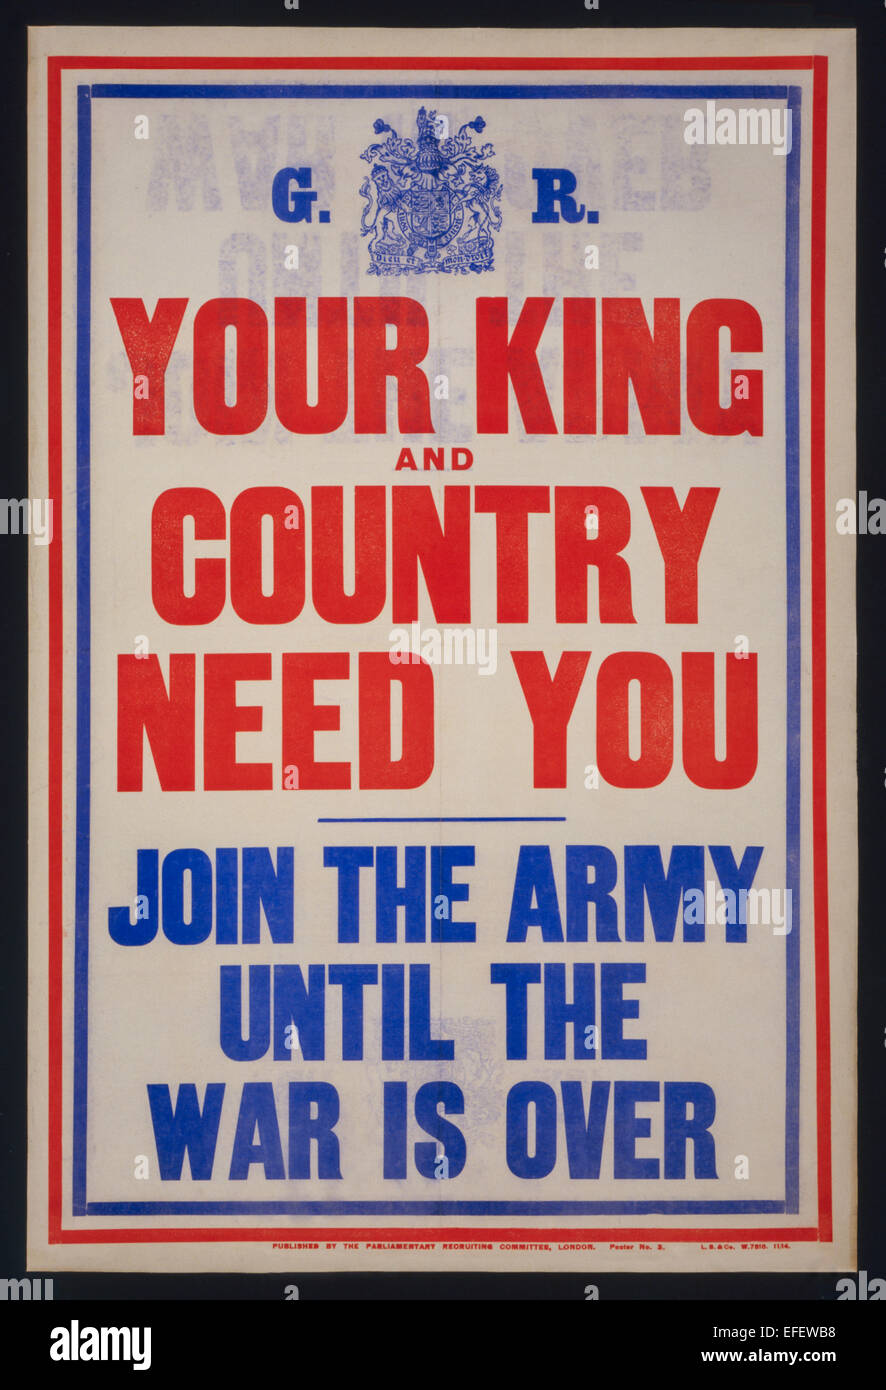 "Ihr König und Land Need You - Join the Army bis Kriegsende über" parlamentarischen Recruiting Committee Poster Nr. 3, November 1914. Siehe Beschreibung für mehr Informationen. Stockfoto